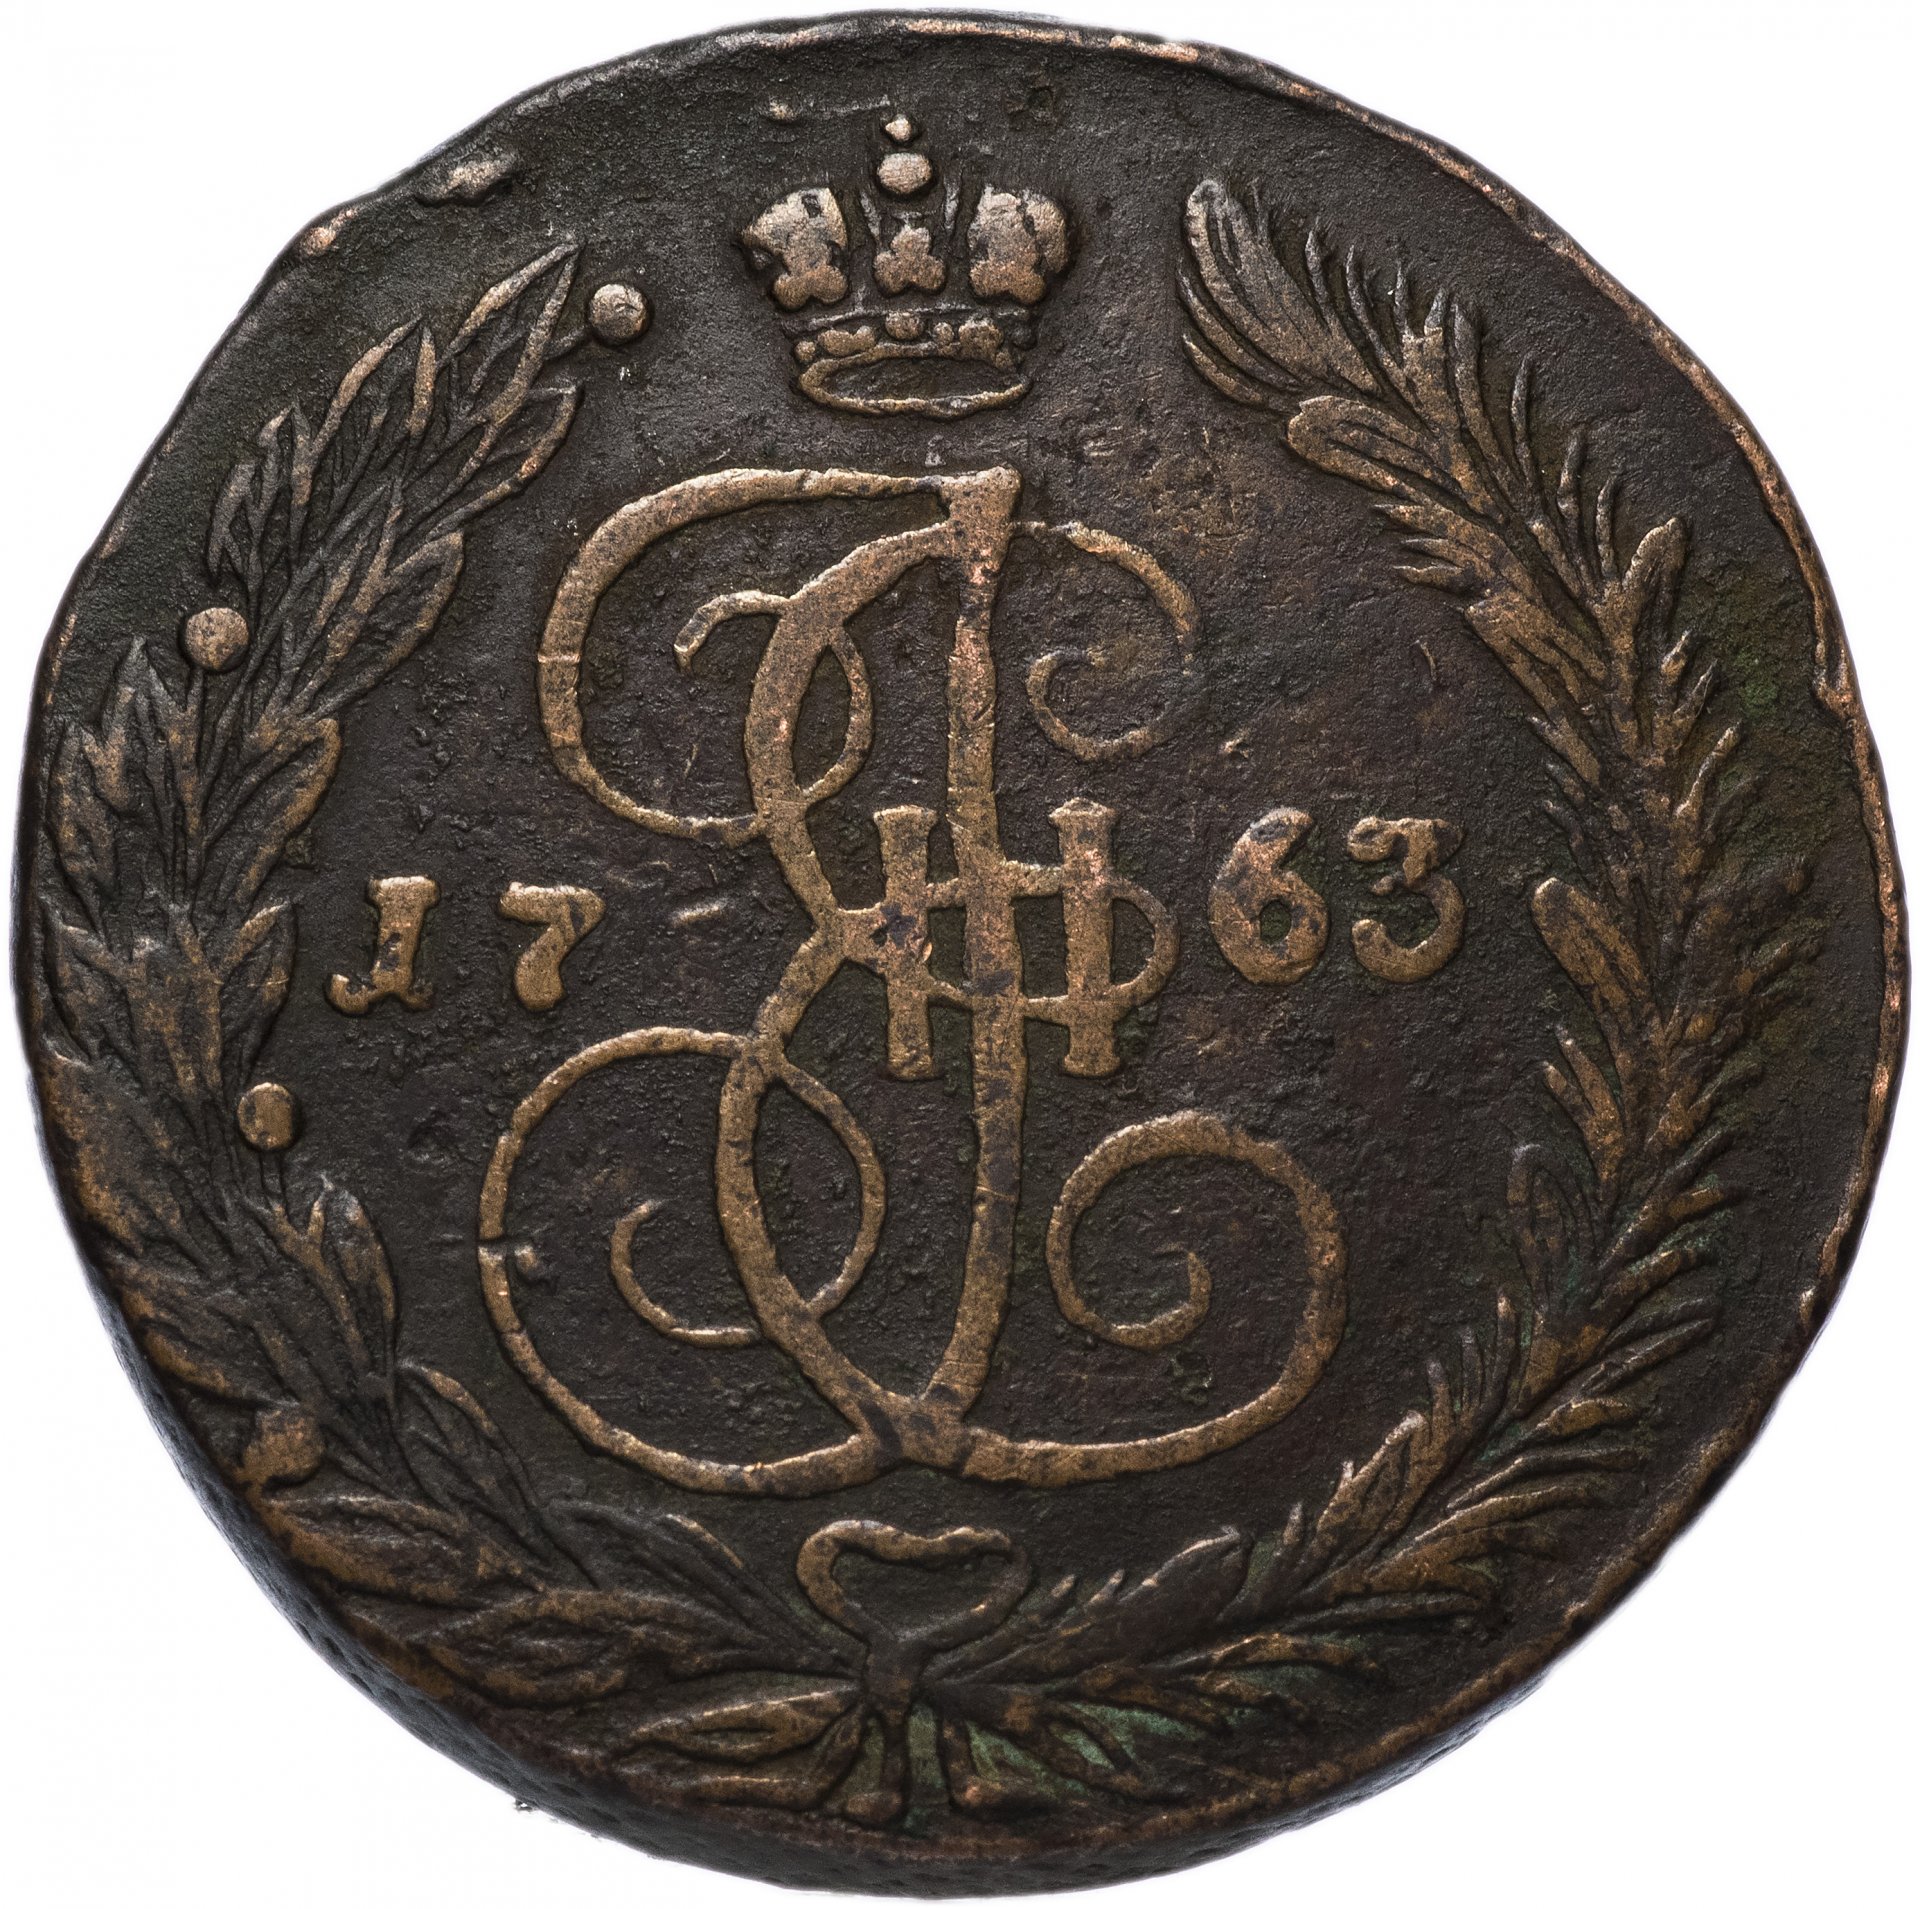 5 копеек 1763. Пять копеек 1763. Монета 1763 года 5 копеек е м.